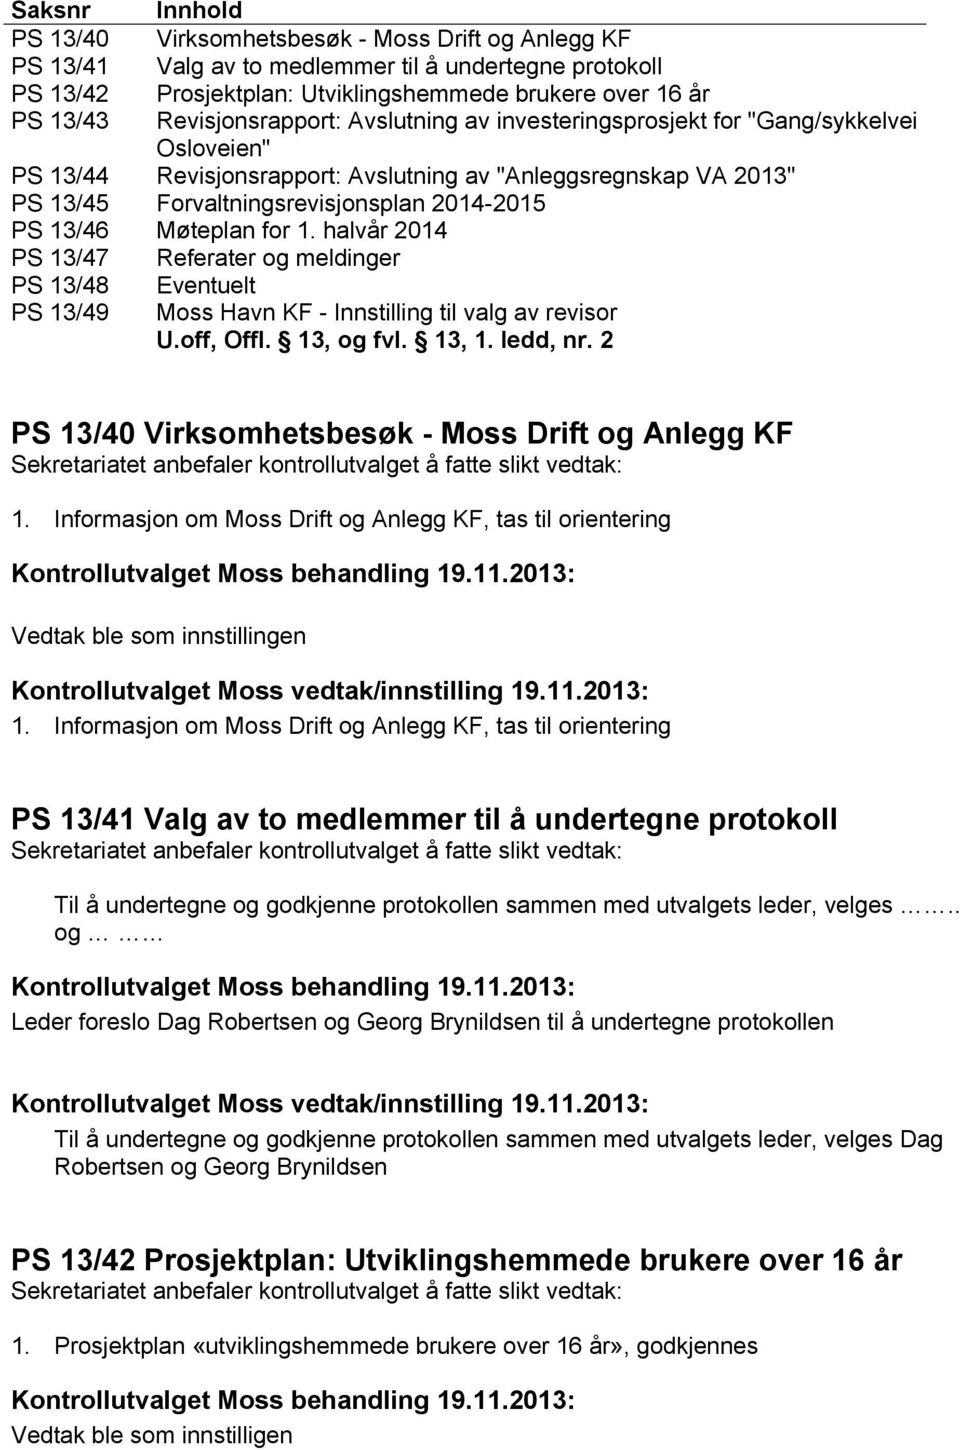 13/46 Møteplan for 1. halvår 2014 PS 13/47 PS 13/48 PS 13/49 Referater og meldinger Eventuelt Moss Havn KF - Innstilling til valg av revisor U.off, Offl. 13, og fvl. 13, 1. ledd, nr.